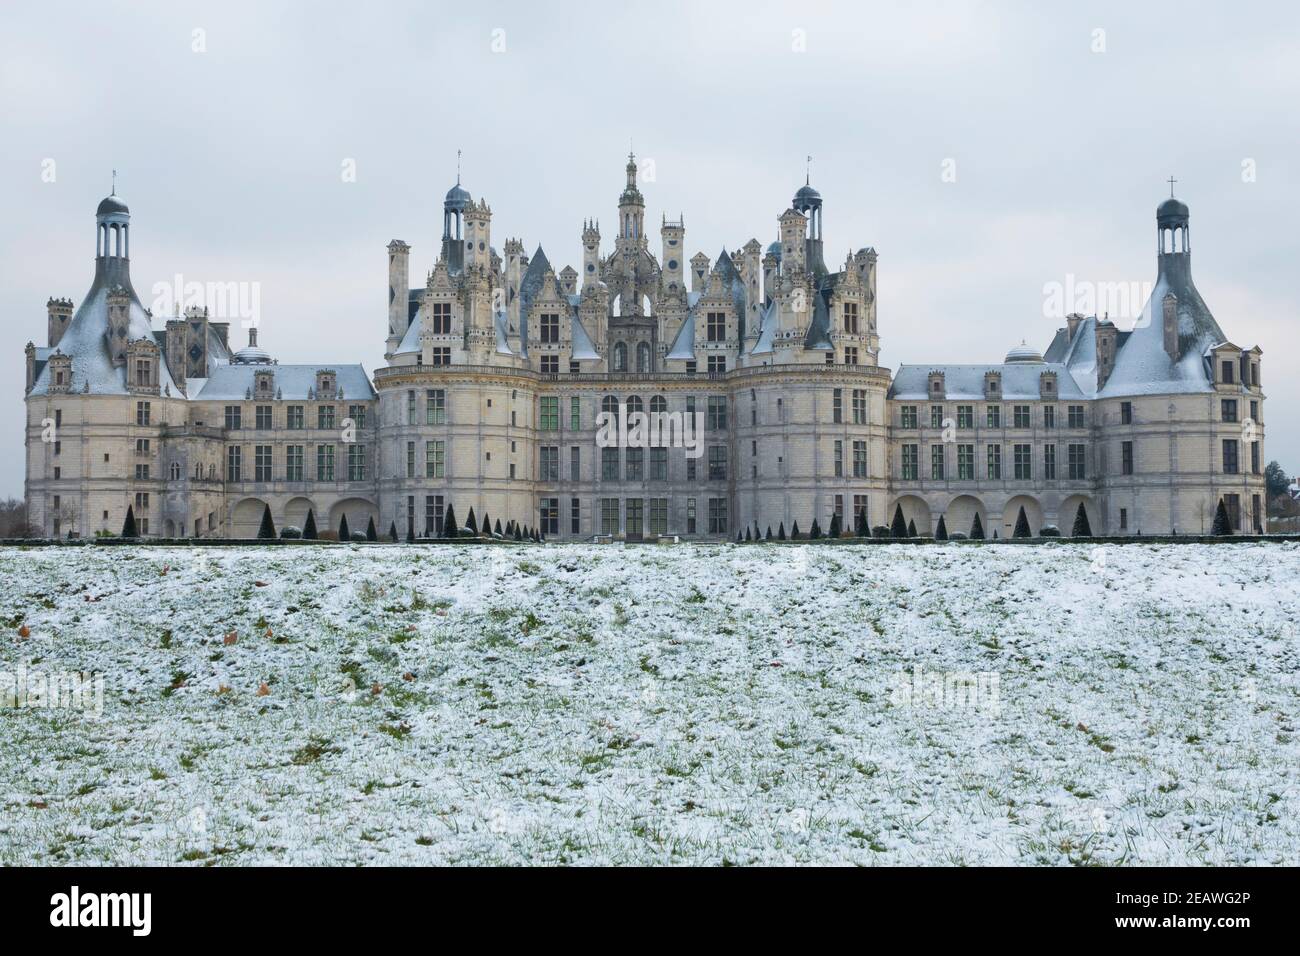 France, Loir-et-cher (41), Chambord (patrimoine mondial de l'UNESCO), château royal de la Renaissance, après les chutes de neige Banque D'Images